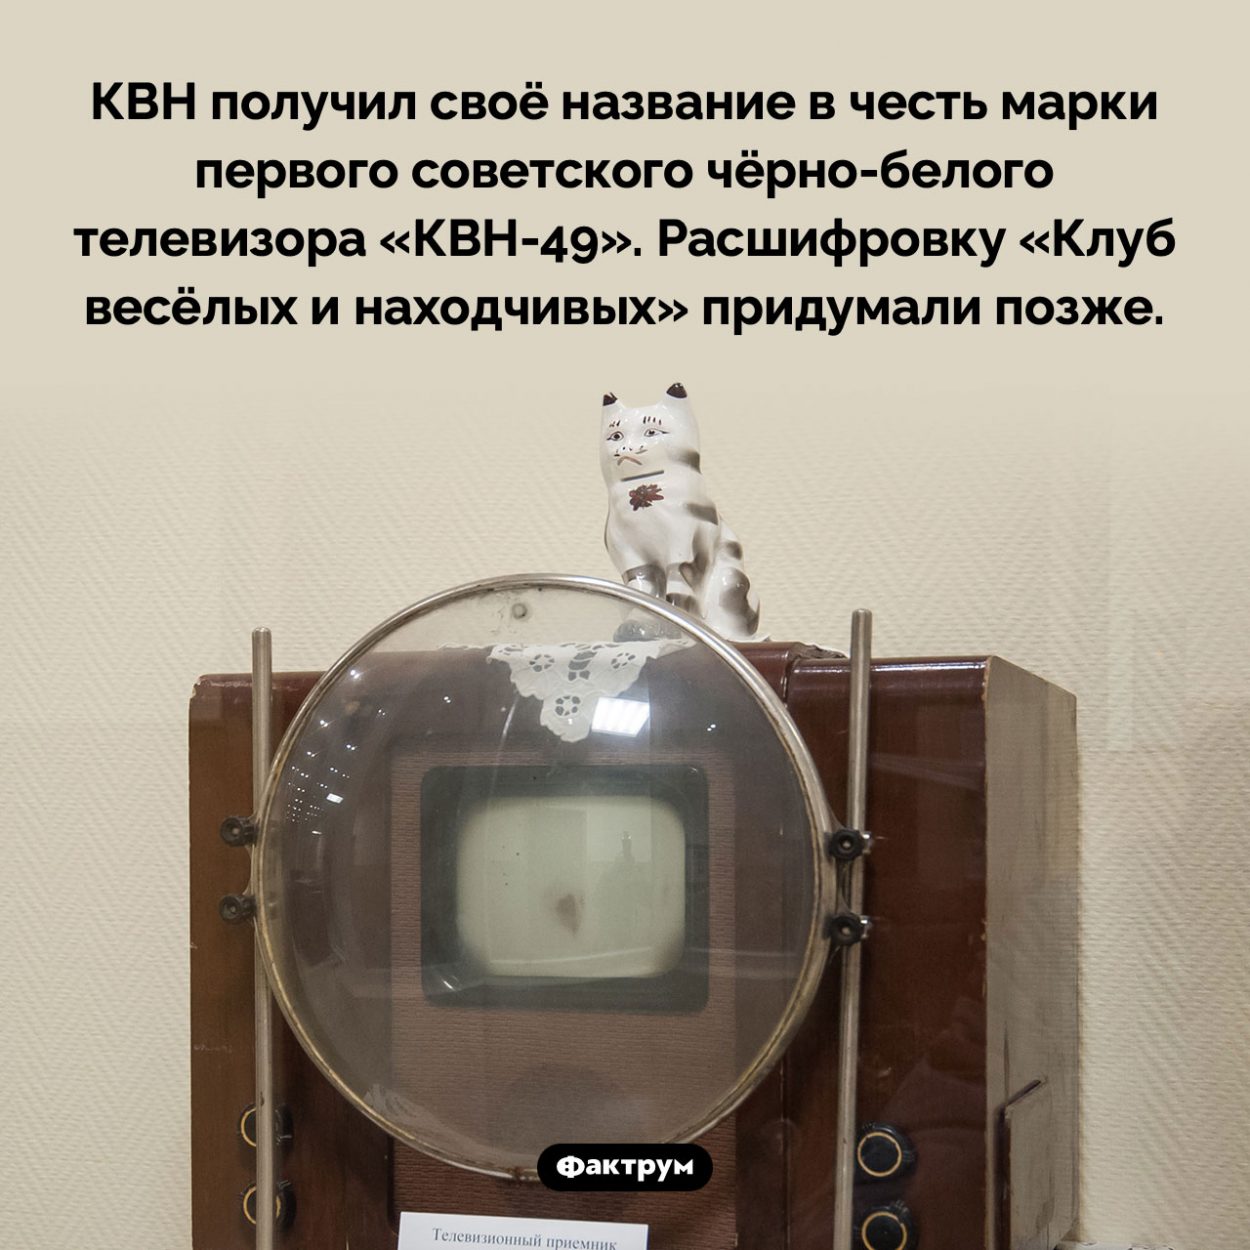 Откуда происходит название КВН. КВН получил своё название в честь марки первого советского чёрно-белого телевизора «КВН-49». Расшифровку «Клуб весёлых и находчивых» придумали позже.